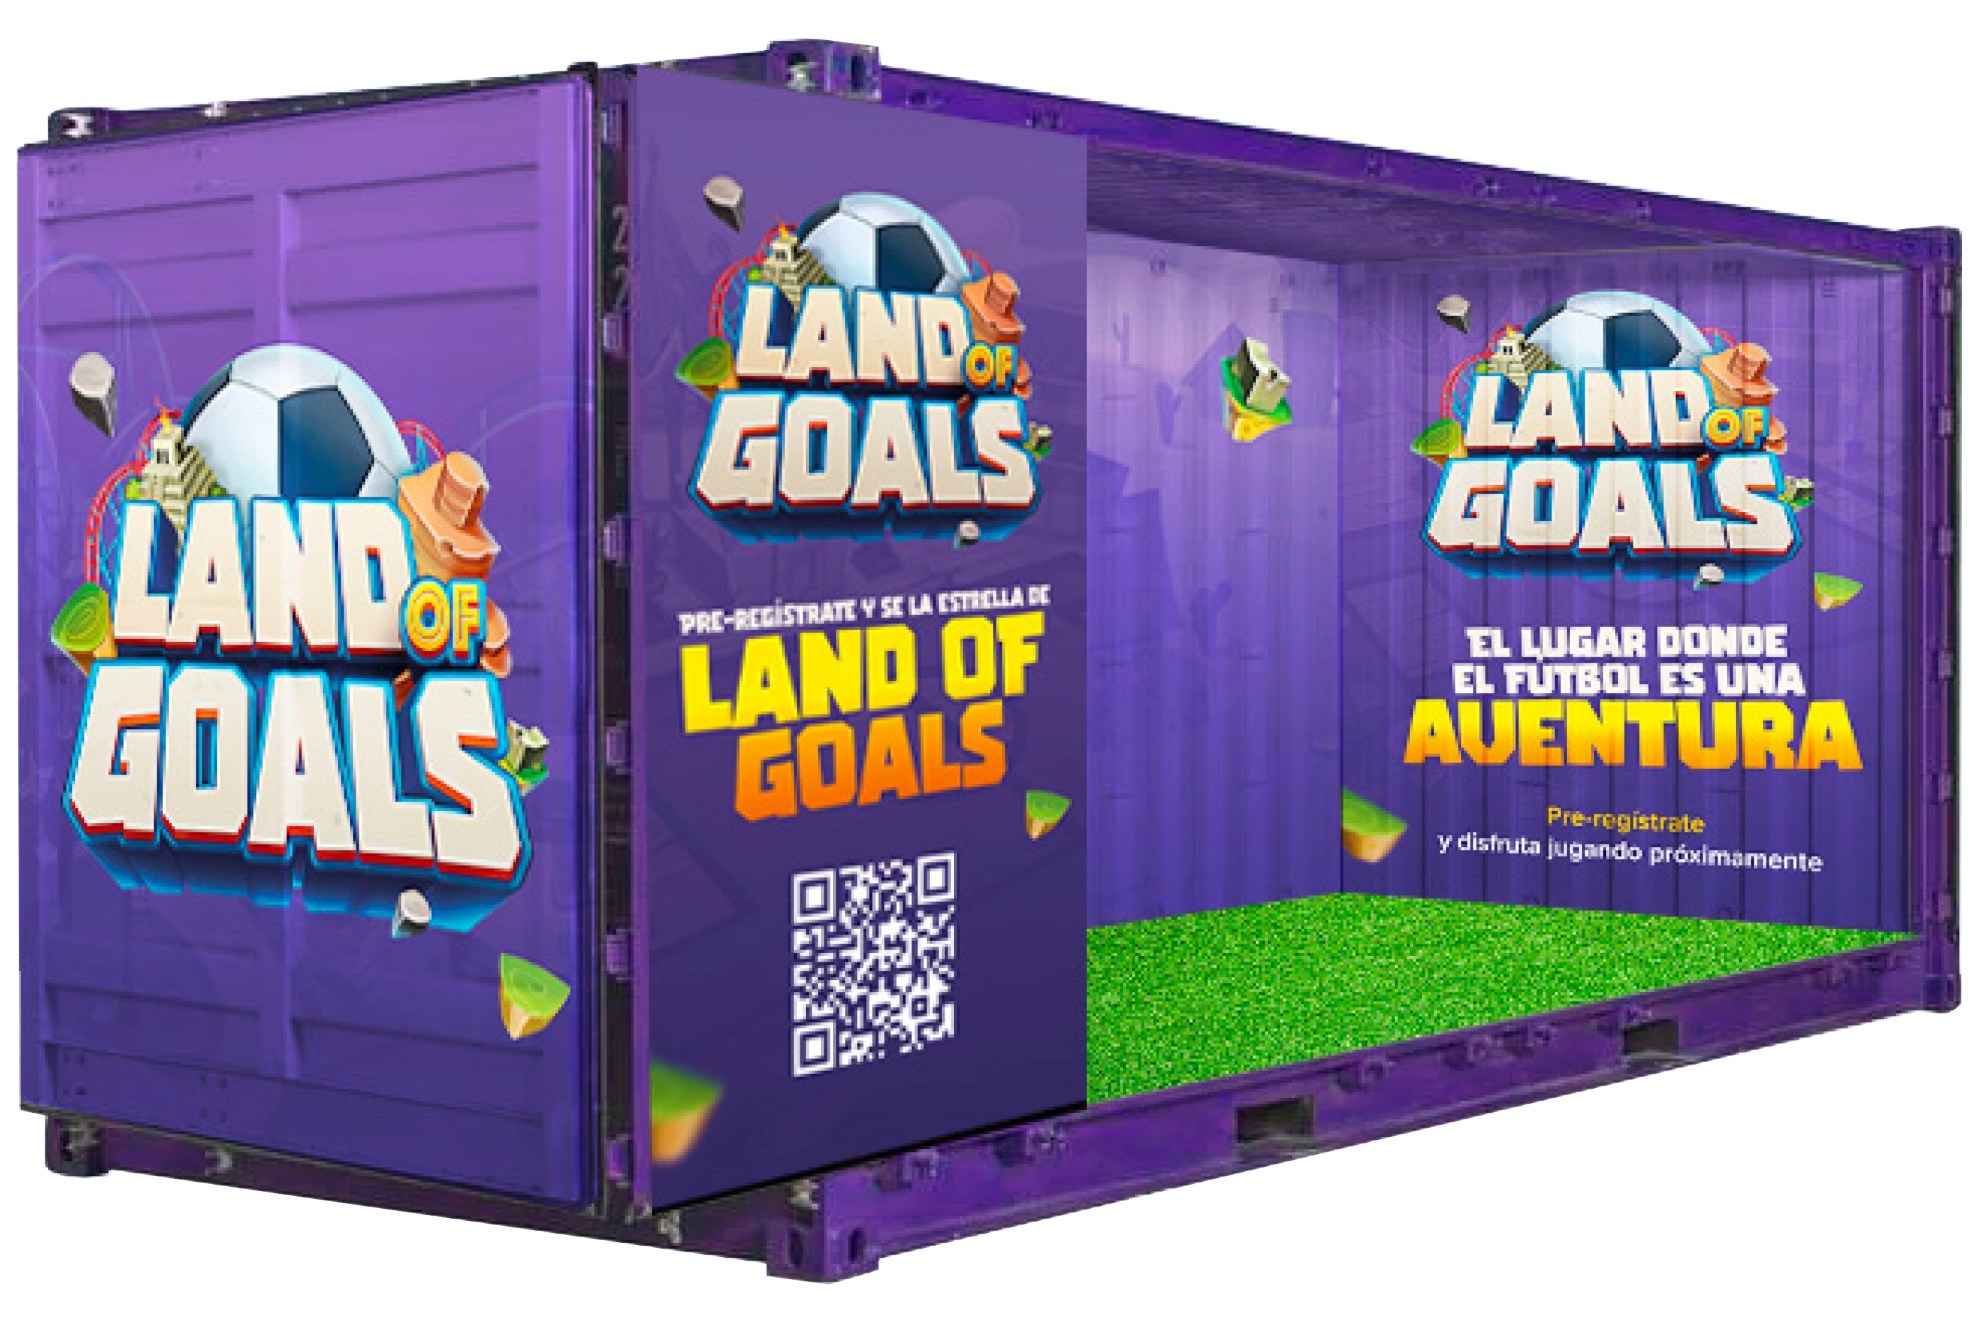 As es el container donde los participantes testan el juego y luego pasan a los campos a jugar.